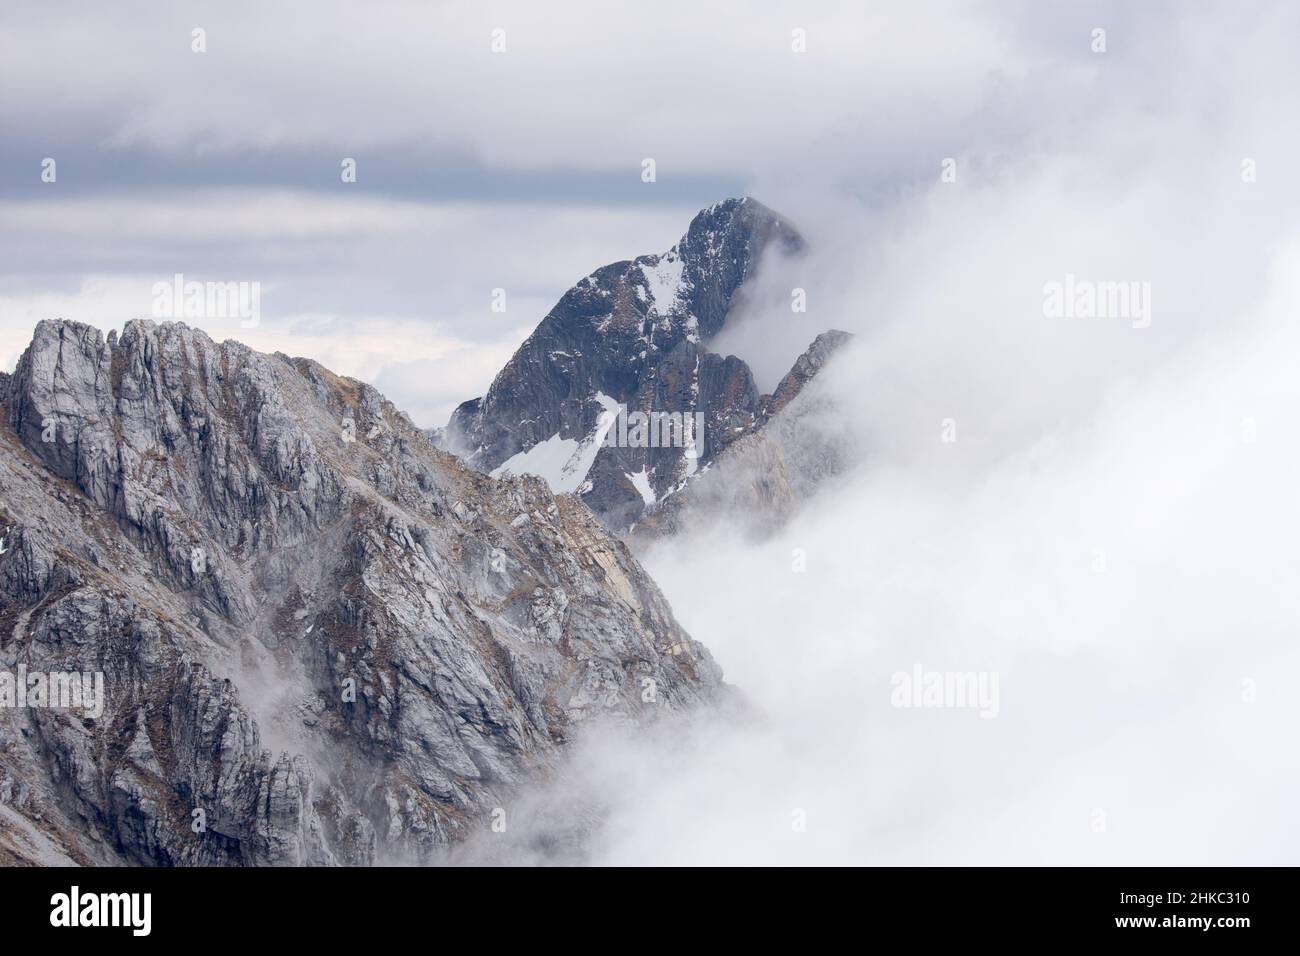 Sommet de montagne en Italie, Alpi Apuane. Banque D'Images